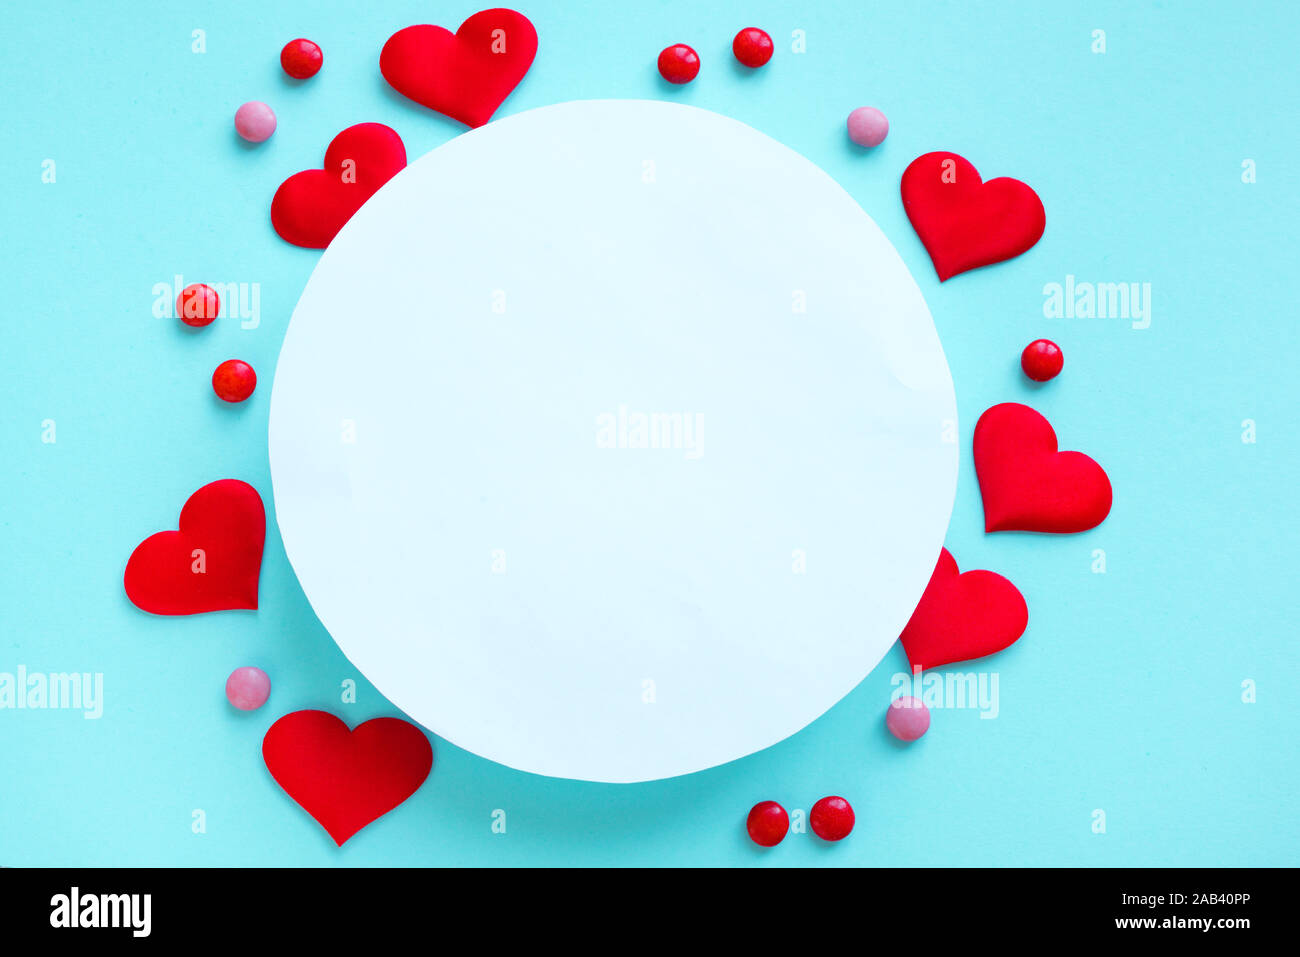 Hãy cùng chia sẻ tình yêu trong ngày lễ Valentine với hình nền đầy tình cảm, với những trái tim đỏ và kẹo ngọt ngào trên nền màu xanh nhạt thật ngọt ngào. Hình ảnh này sẽ cho bạn và người ấy nhiều cảm xúc và kỷ niệm đẹp trong ngày đặc biệt này.